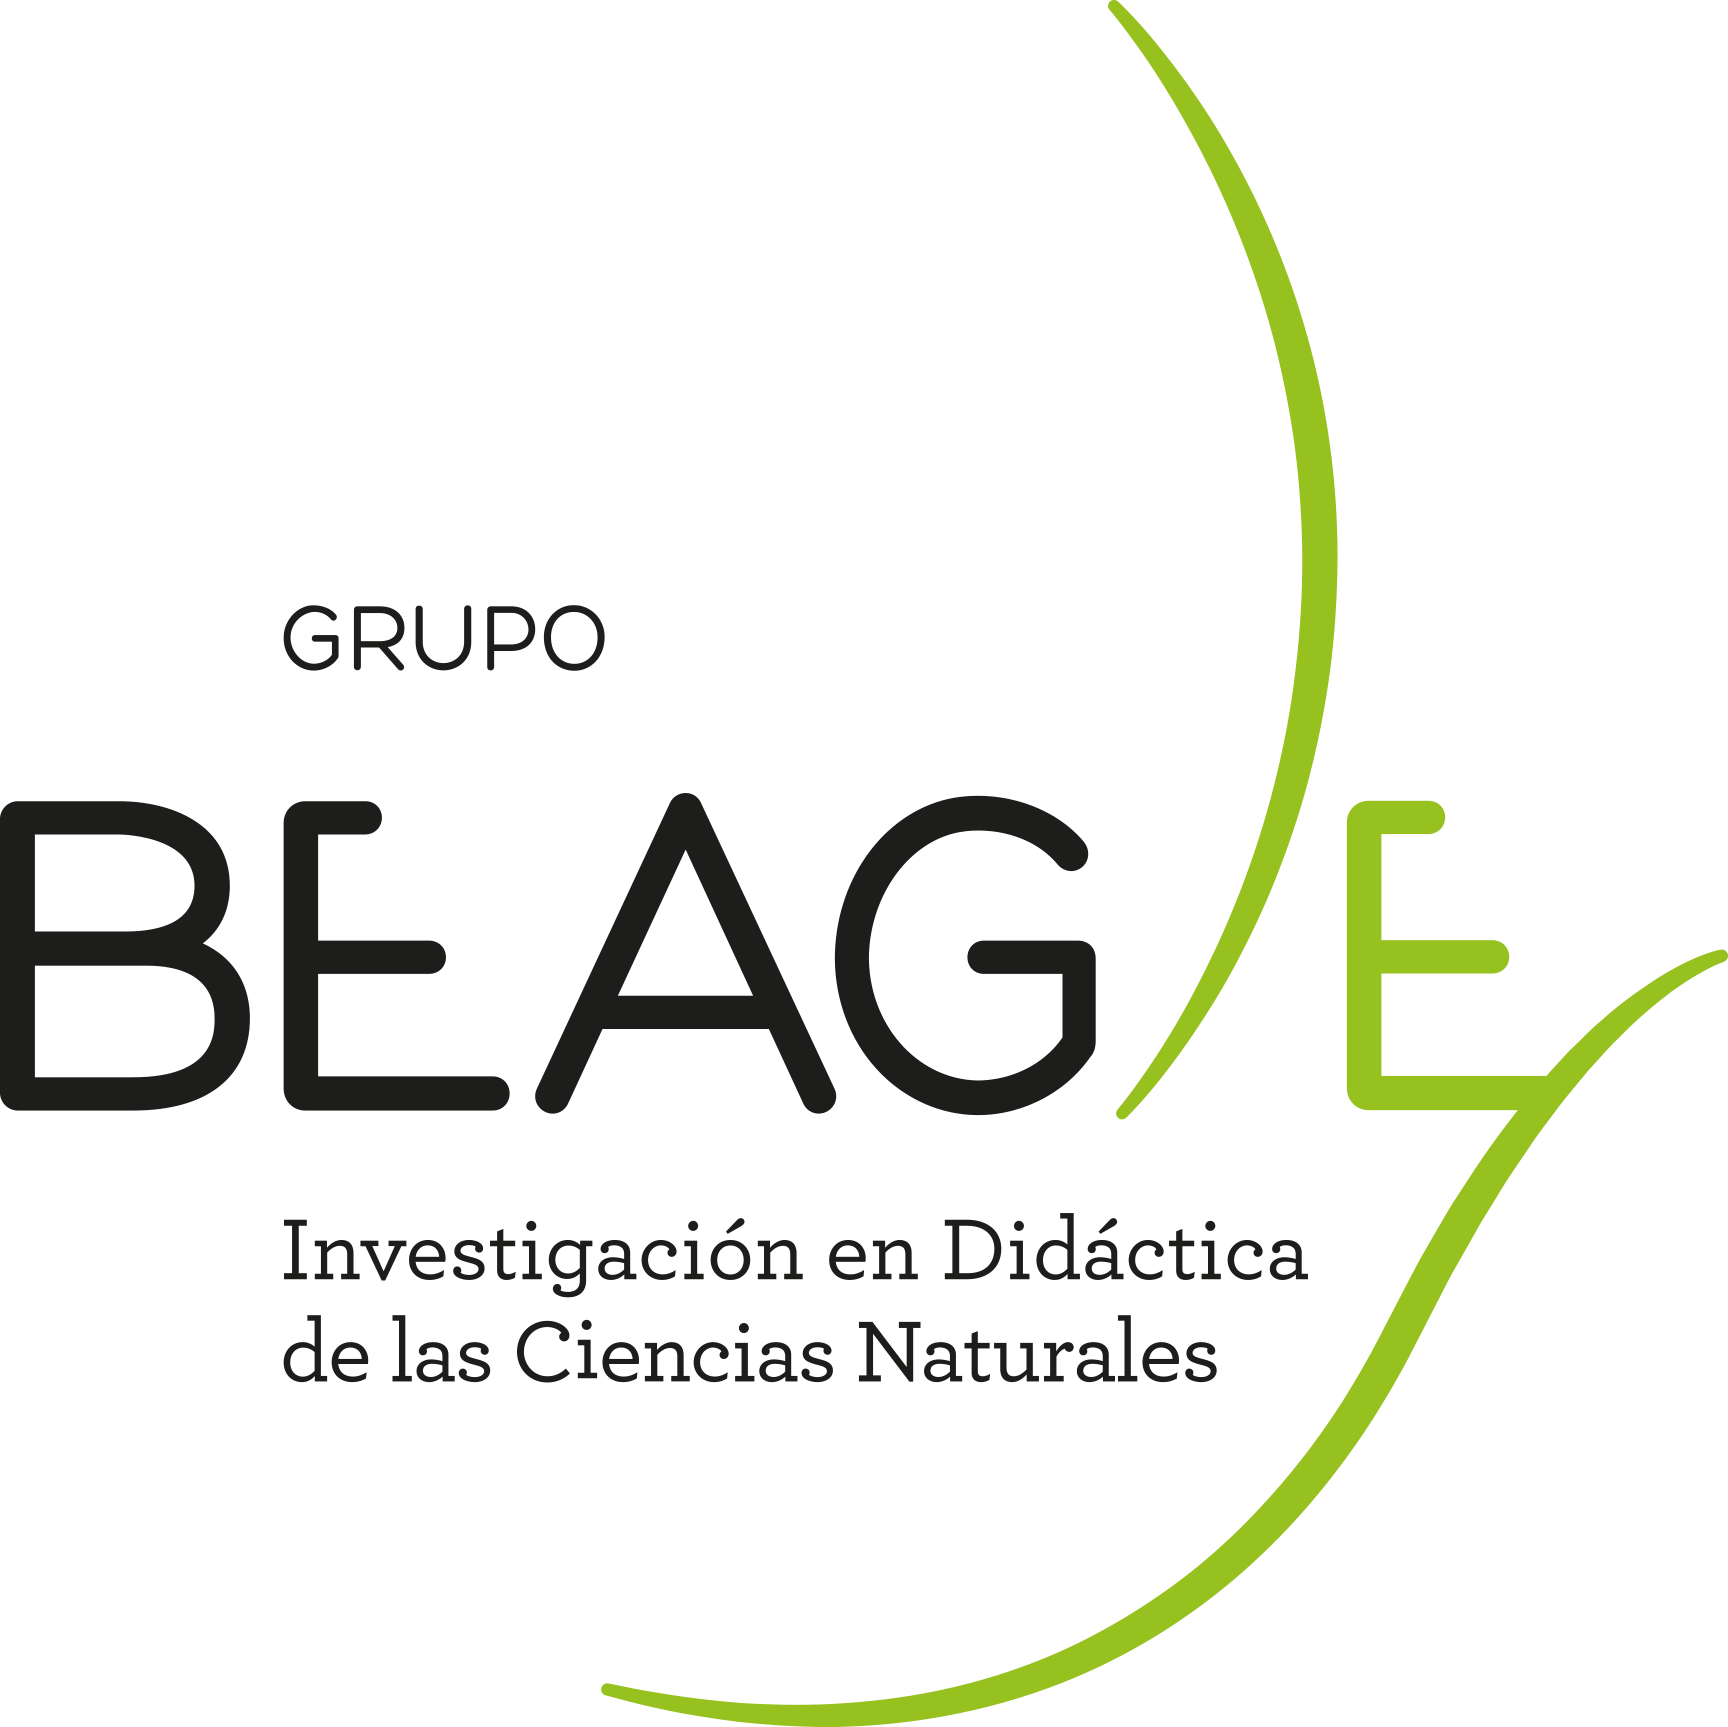 Grupo Beagle